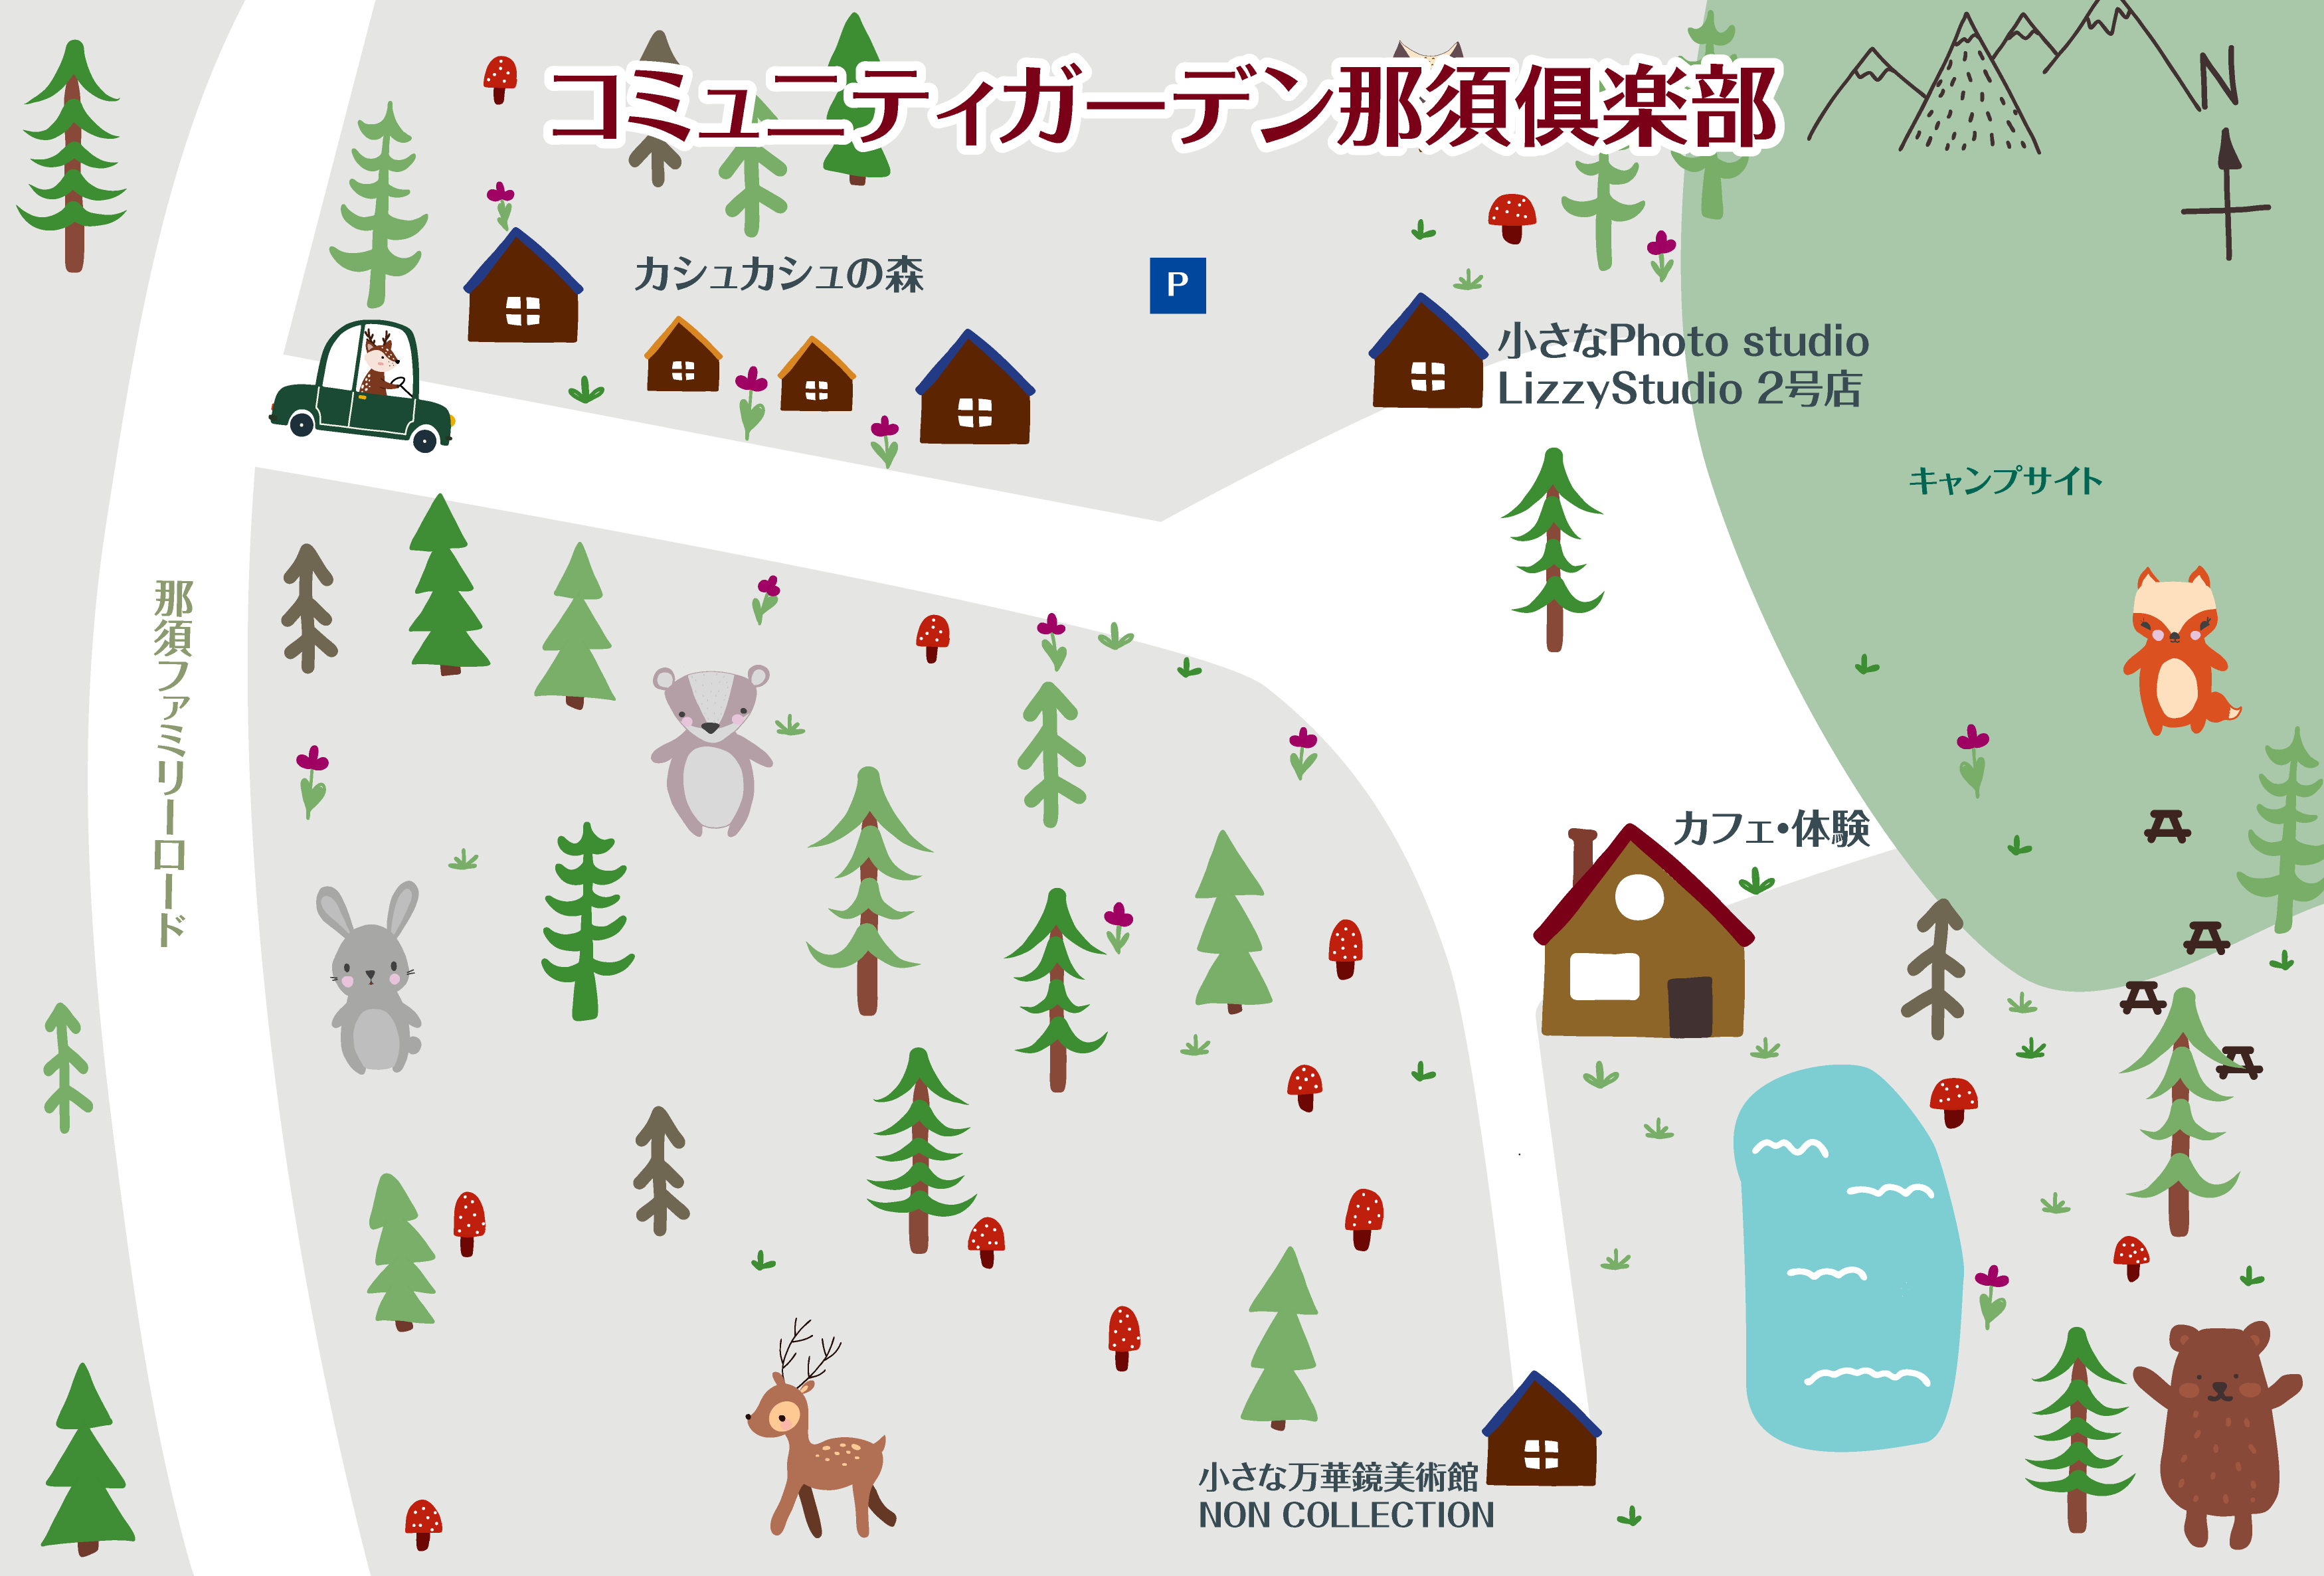 コミュニティガーデン那須の敷地内マップ